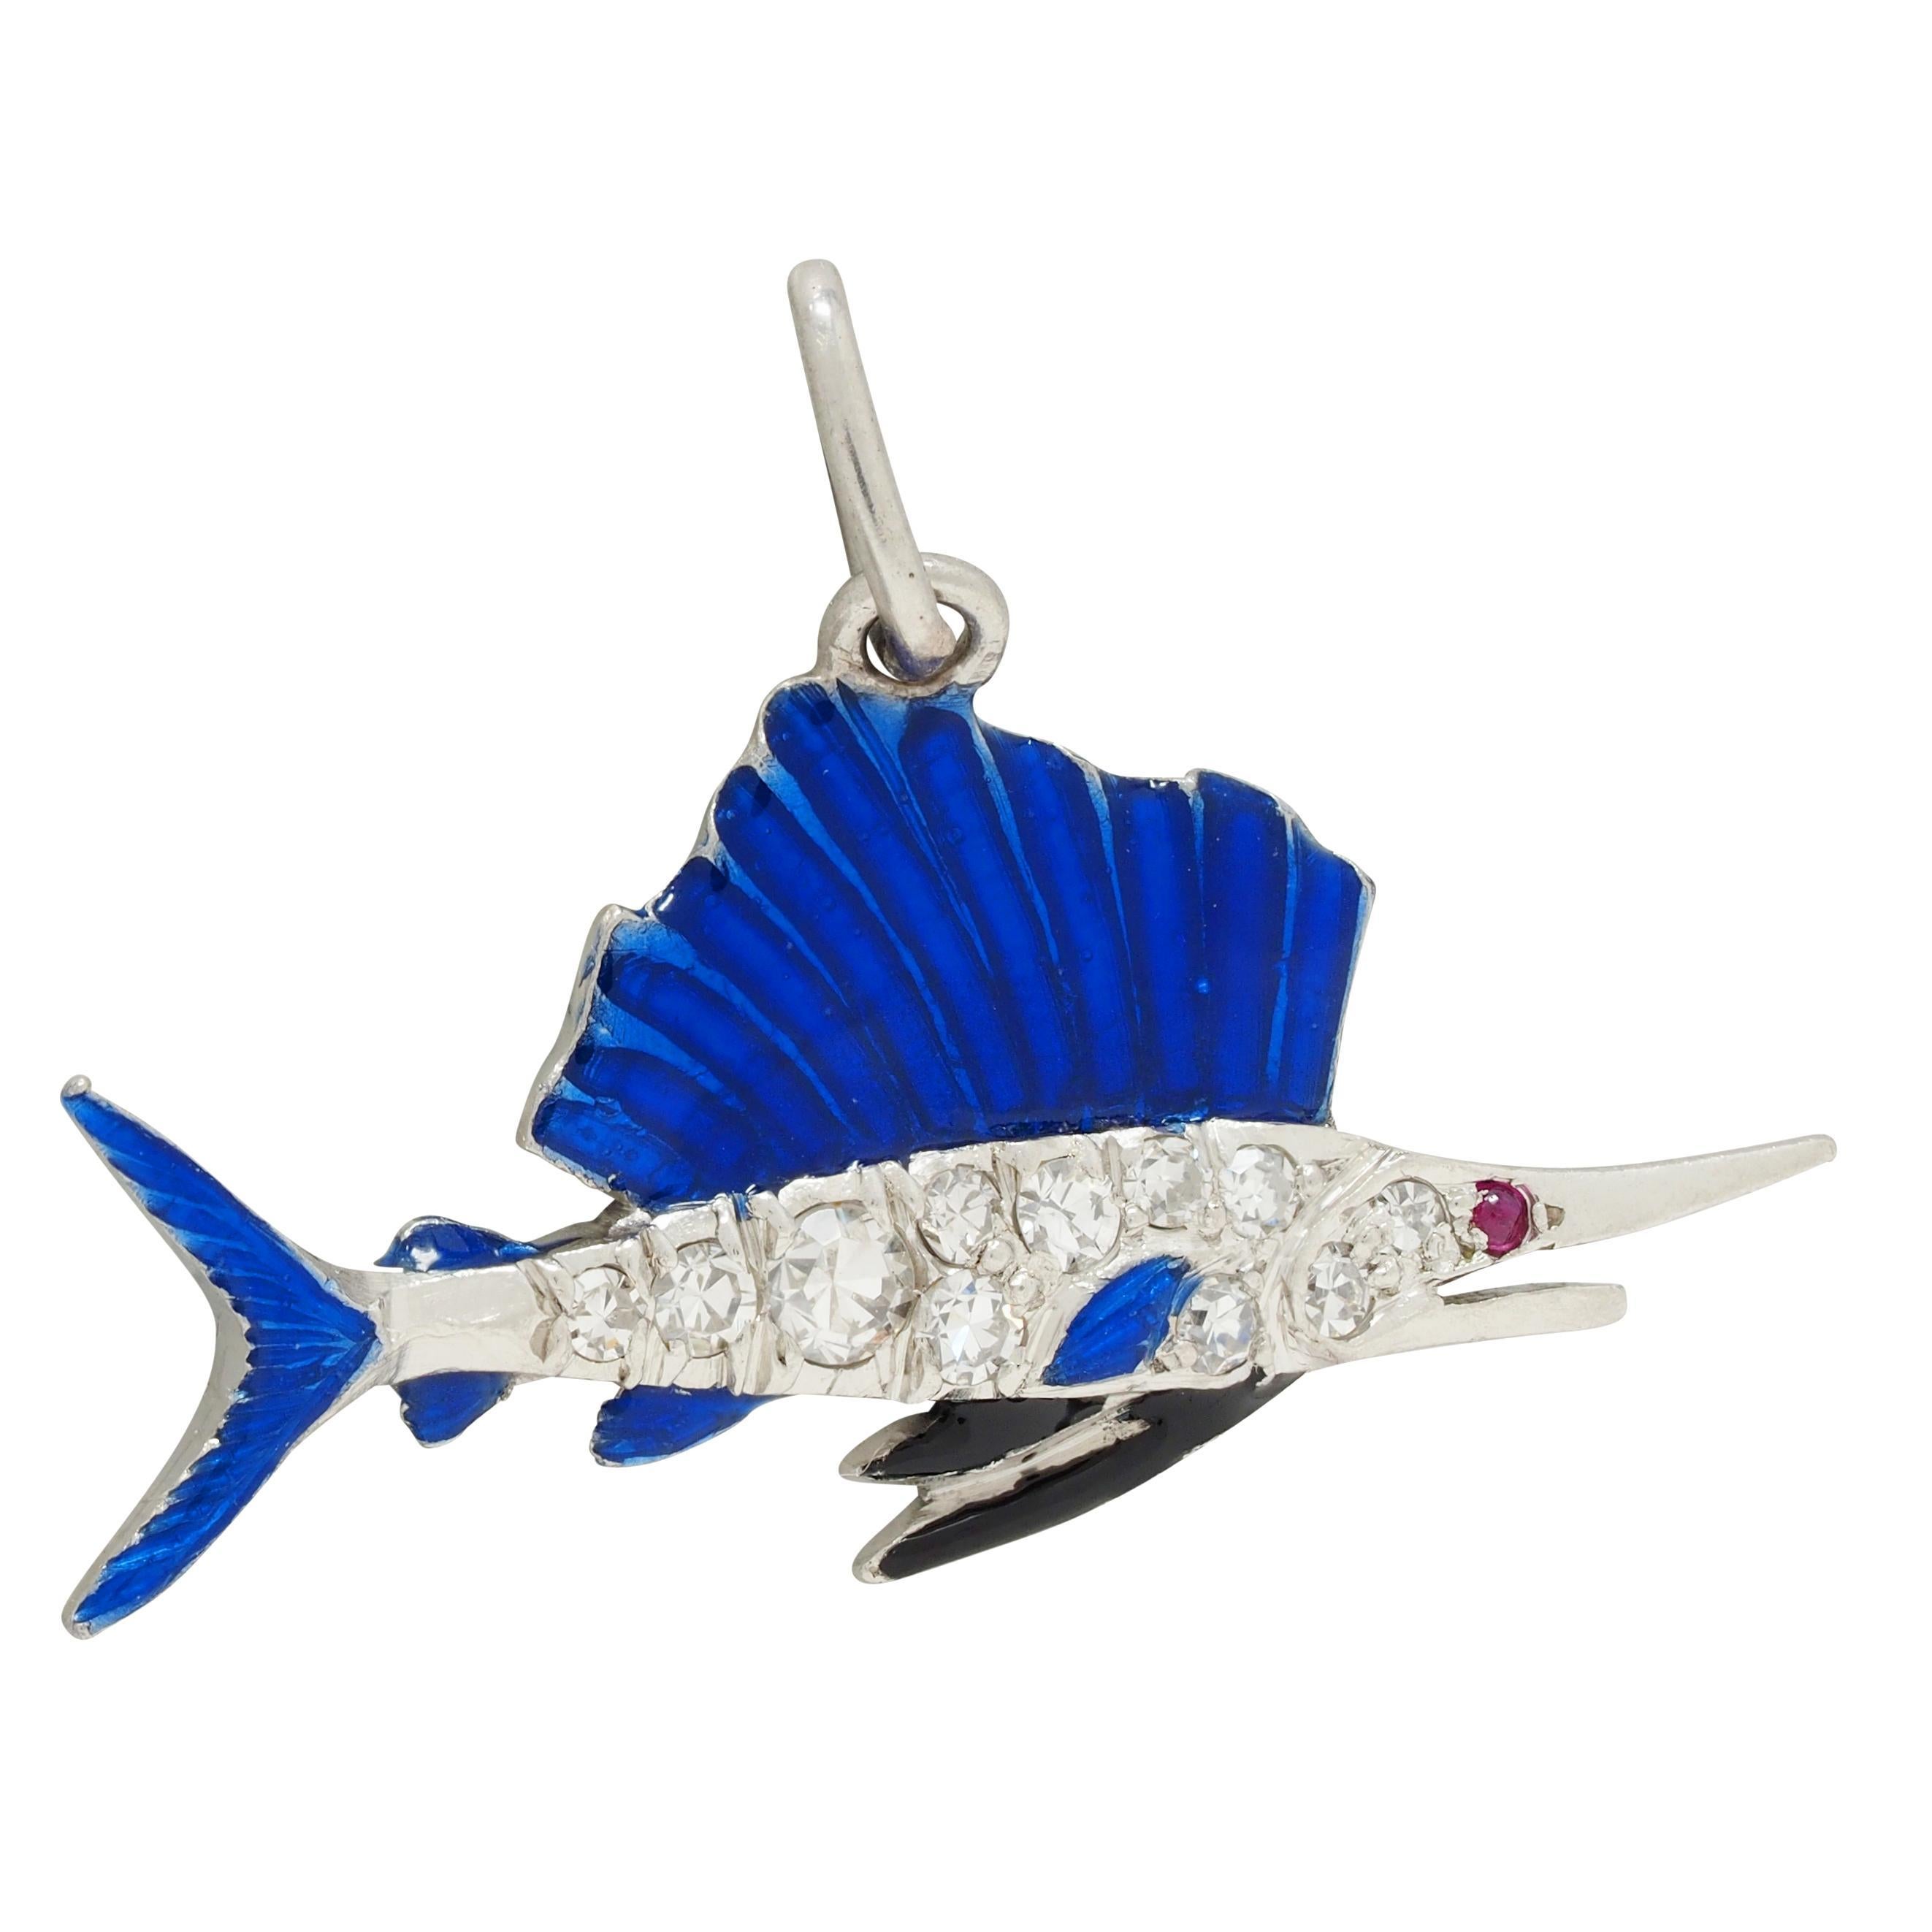 In Form eines Schwertfischs mit pavégefassten Diamanten im Einzelschliff 
Mit einem Gesamtgewicht von etwa 0.10 Karat - augenrein und glänzend
Mit emaillierten Flossen - transparent blau und schwarz 
Glänzende, lineare Gravur auf der Rückenflosse -